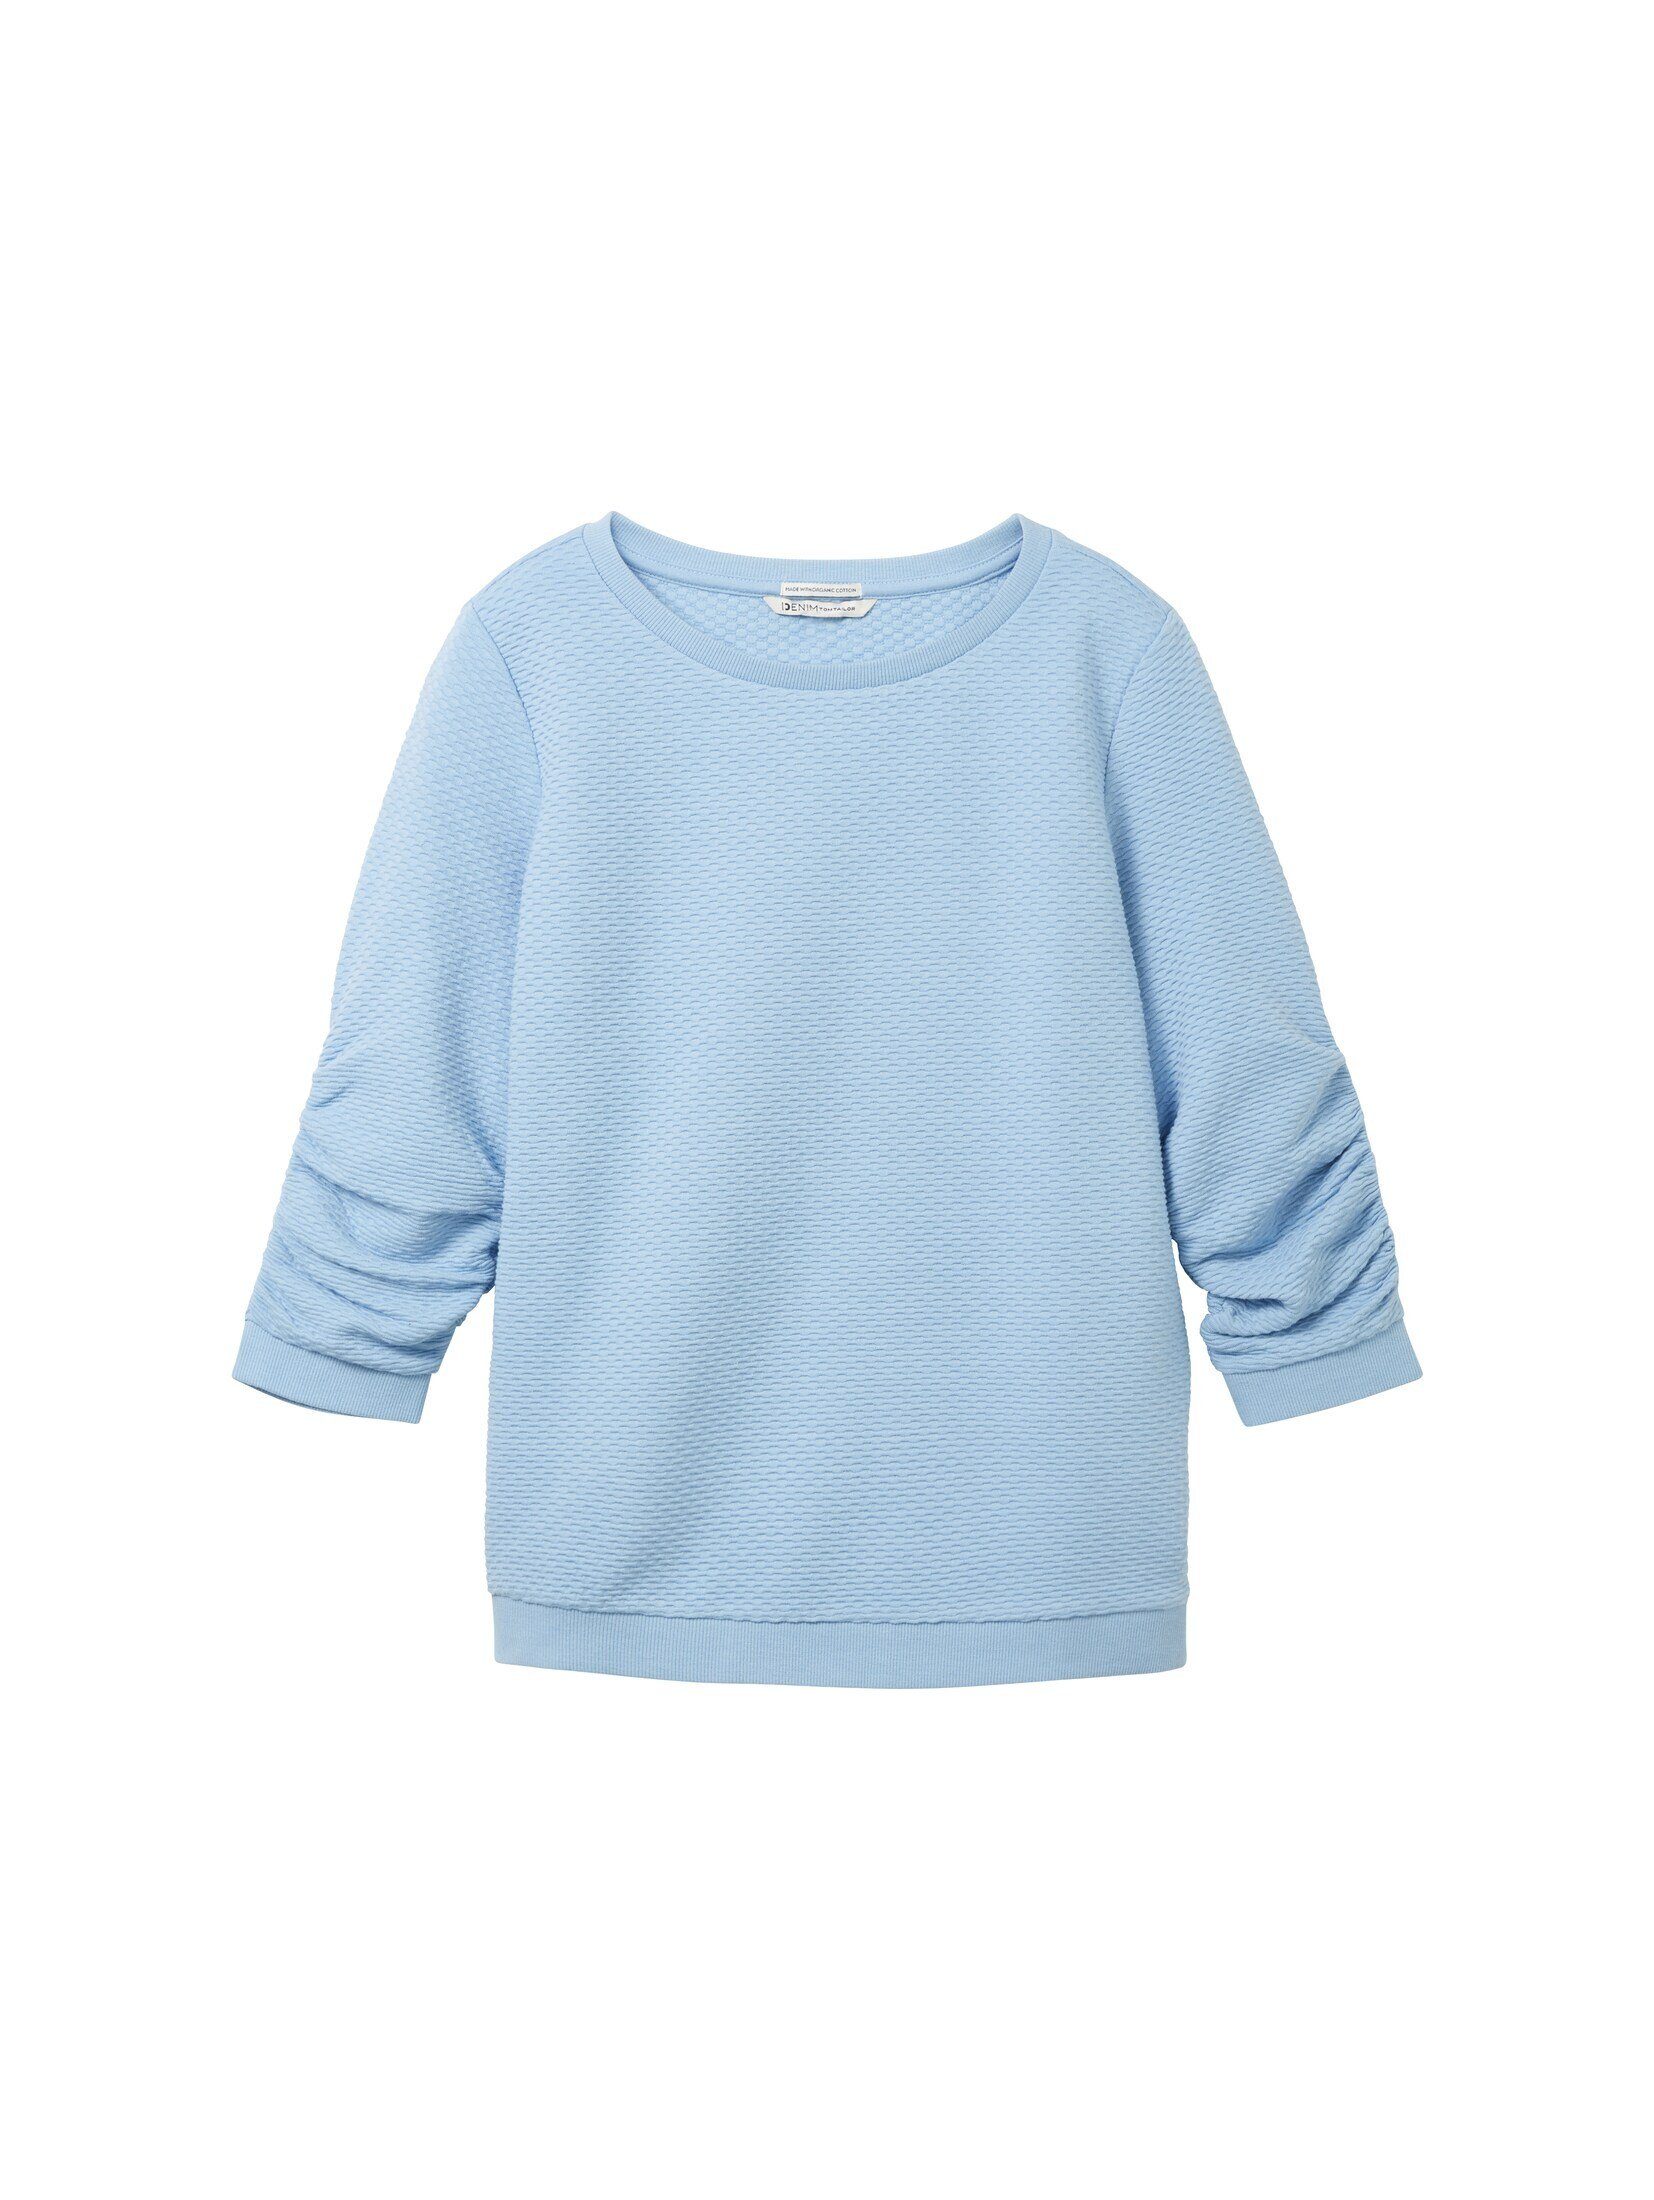 TOM TAILOR Charming Soft Sweatshirt Strukturiertes Blue Sweatshirt Denim